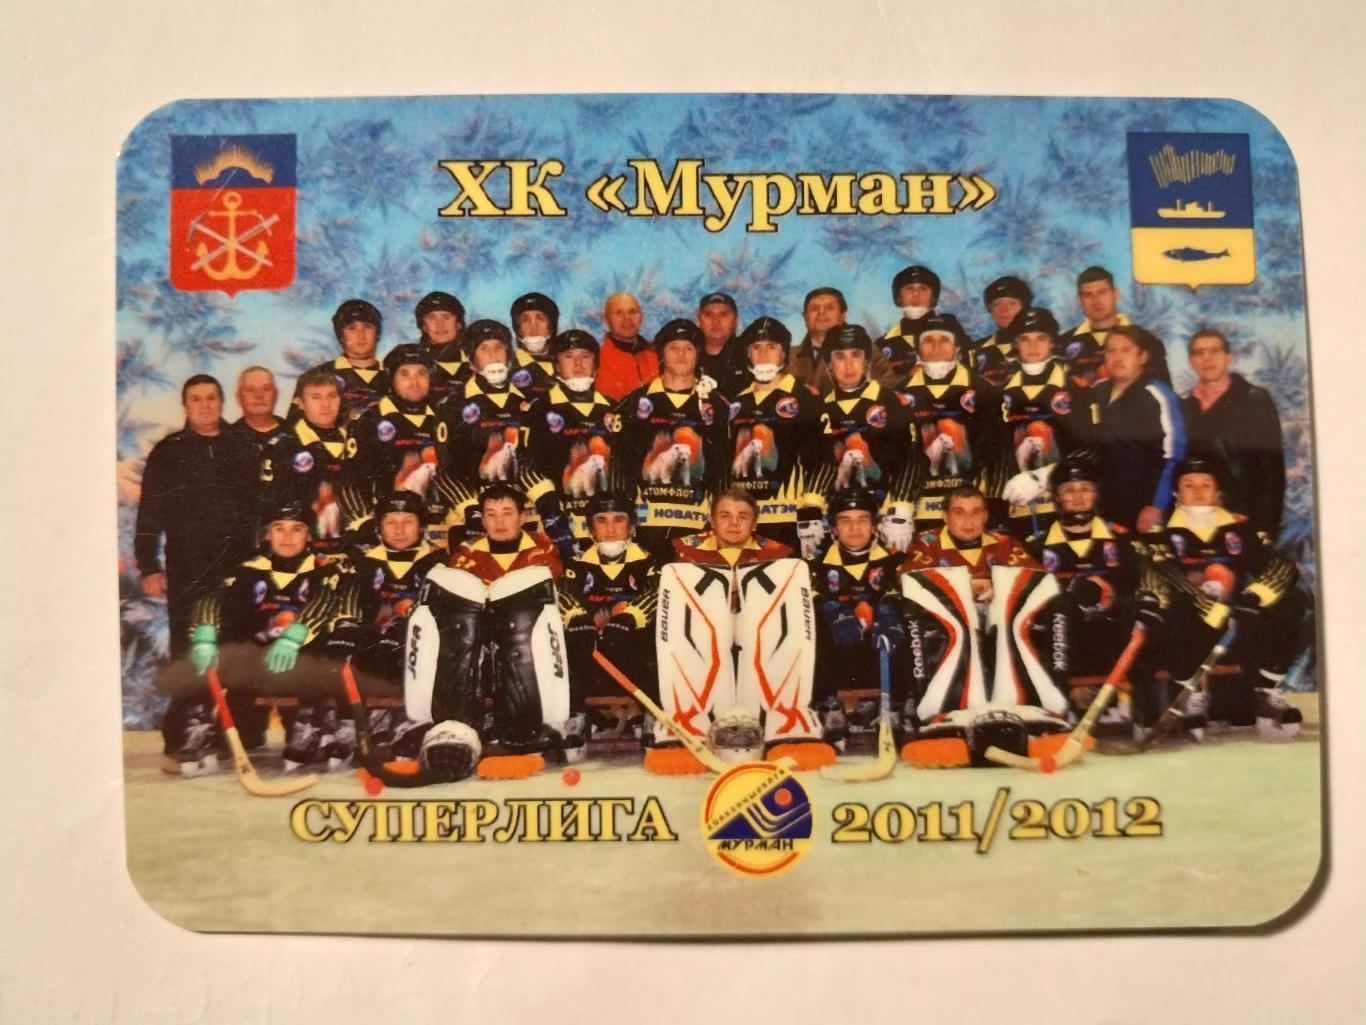 ХК Мурман, Хоккей с мячом, Мурманск 2011/12